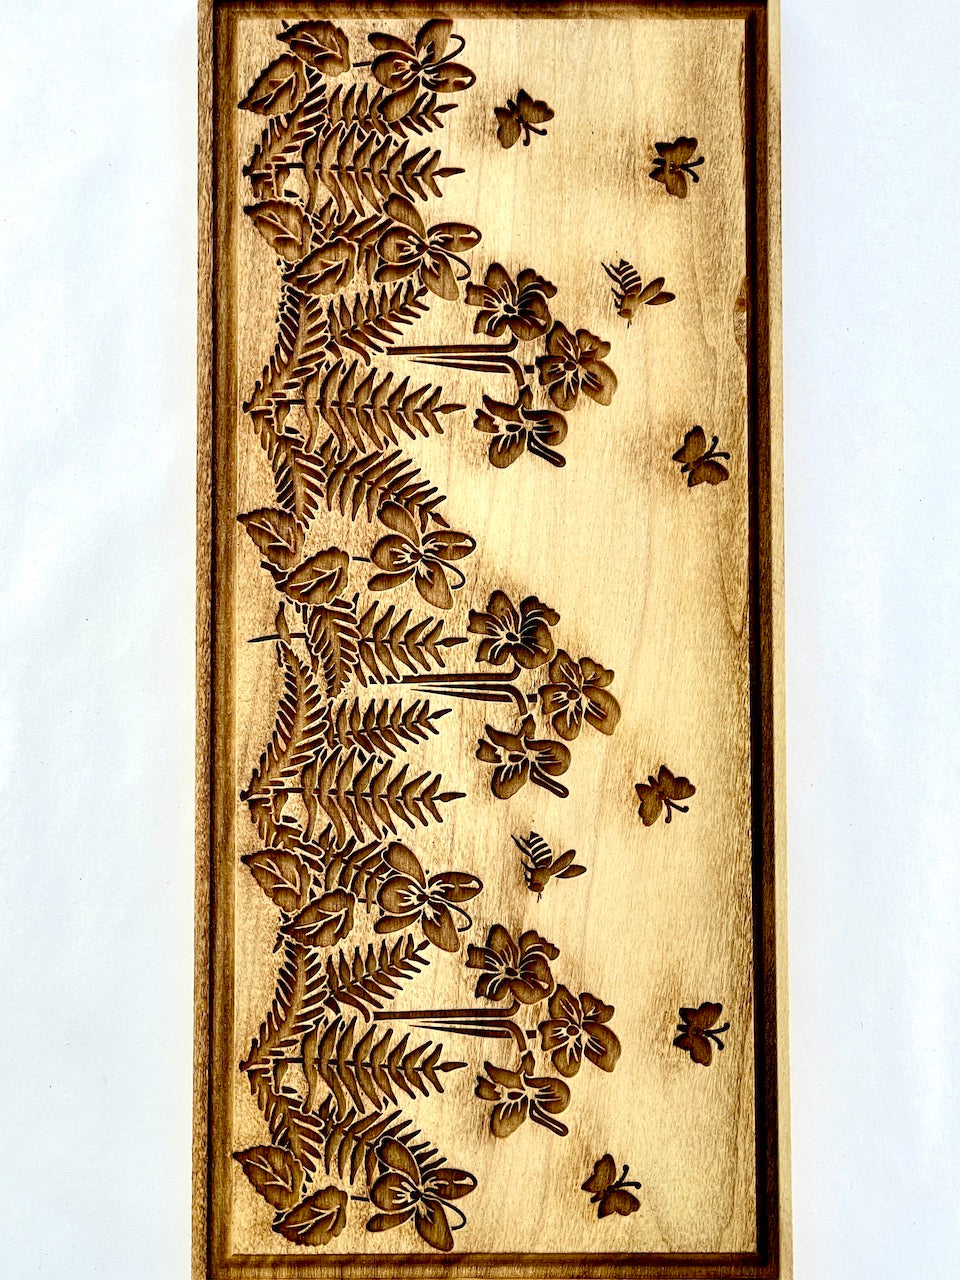 Fern, Violets & Butterflies Textured Plank